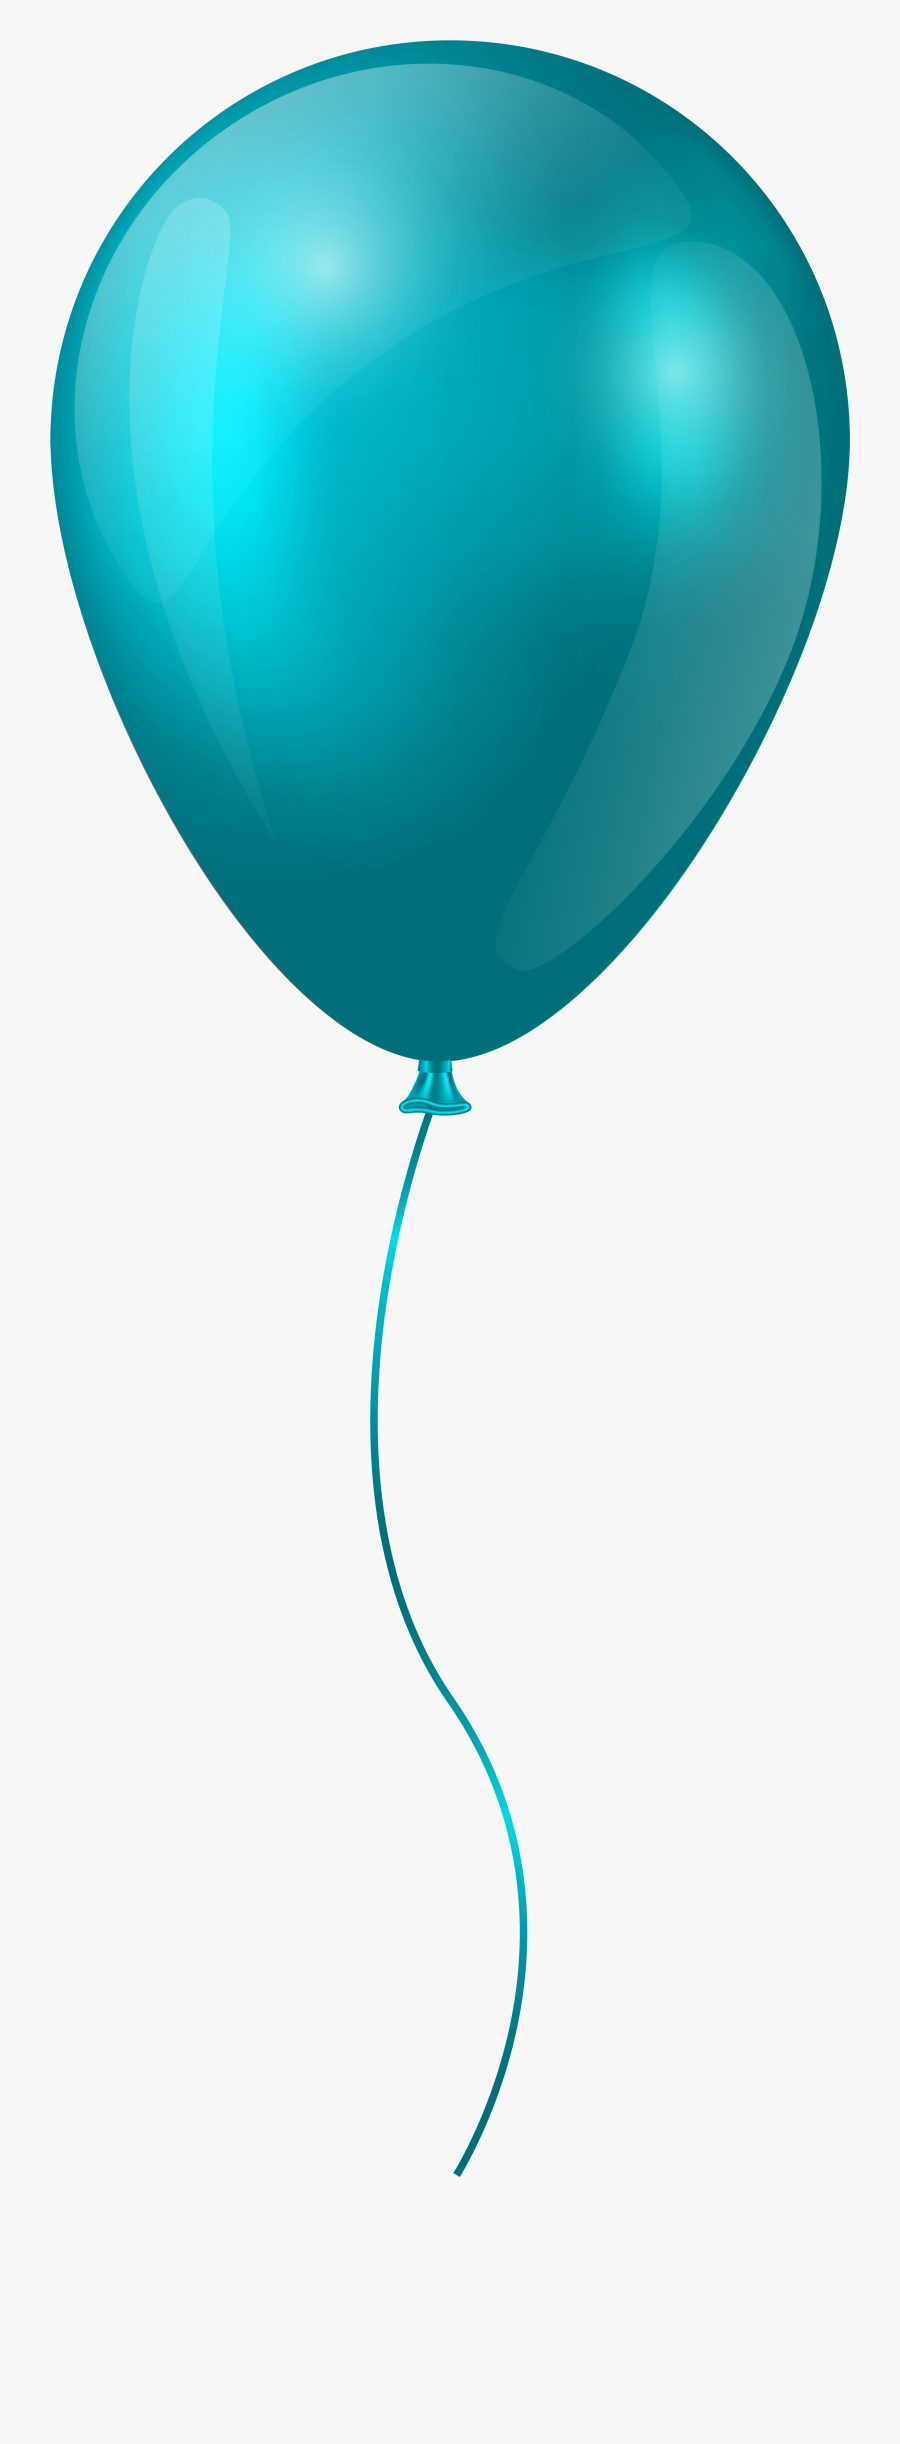 Clipart Balloons Light Green - Blue Balloon Clipart Hd, Transparent Clipart